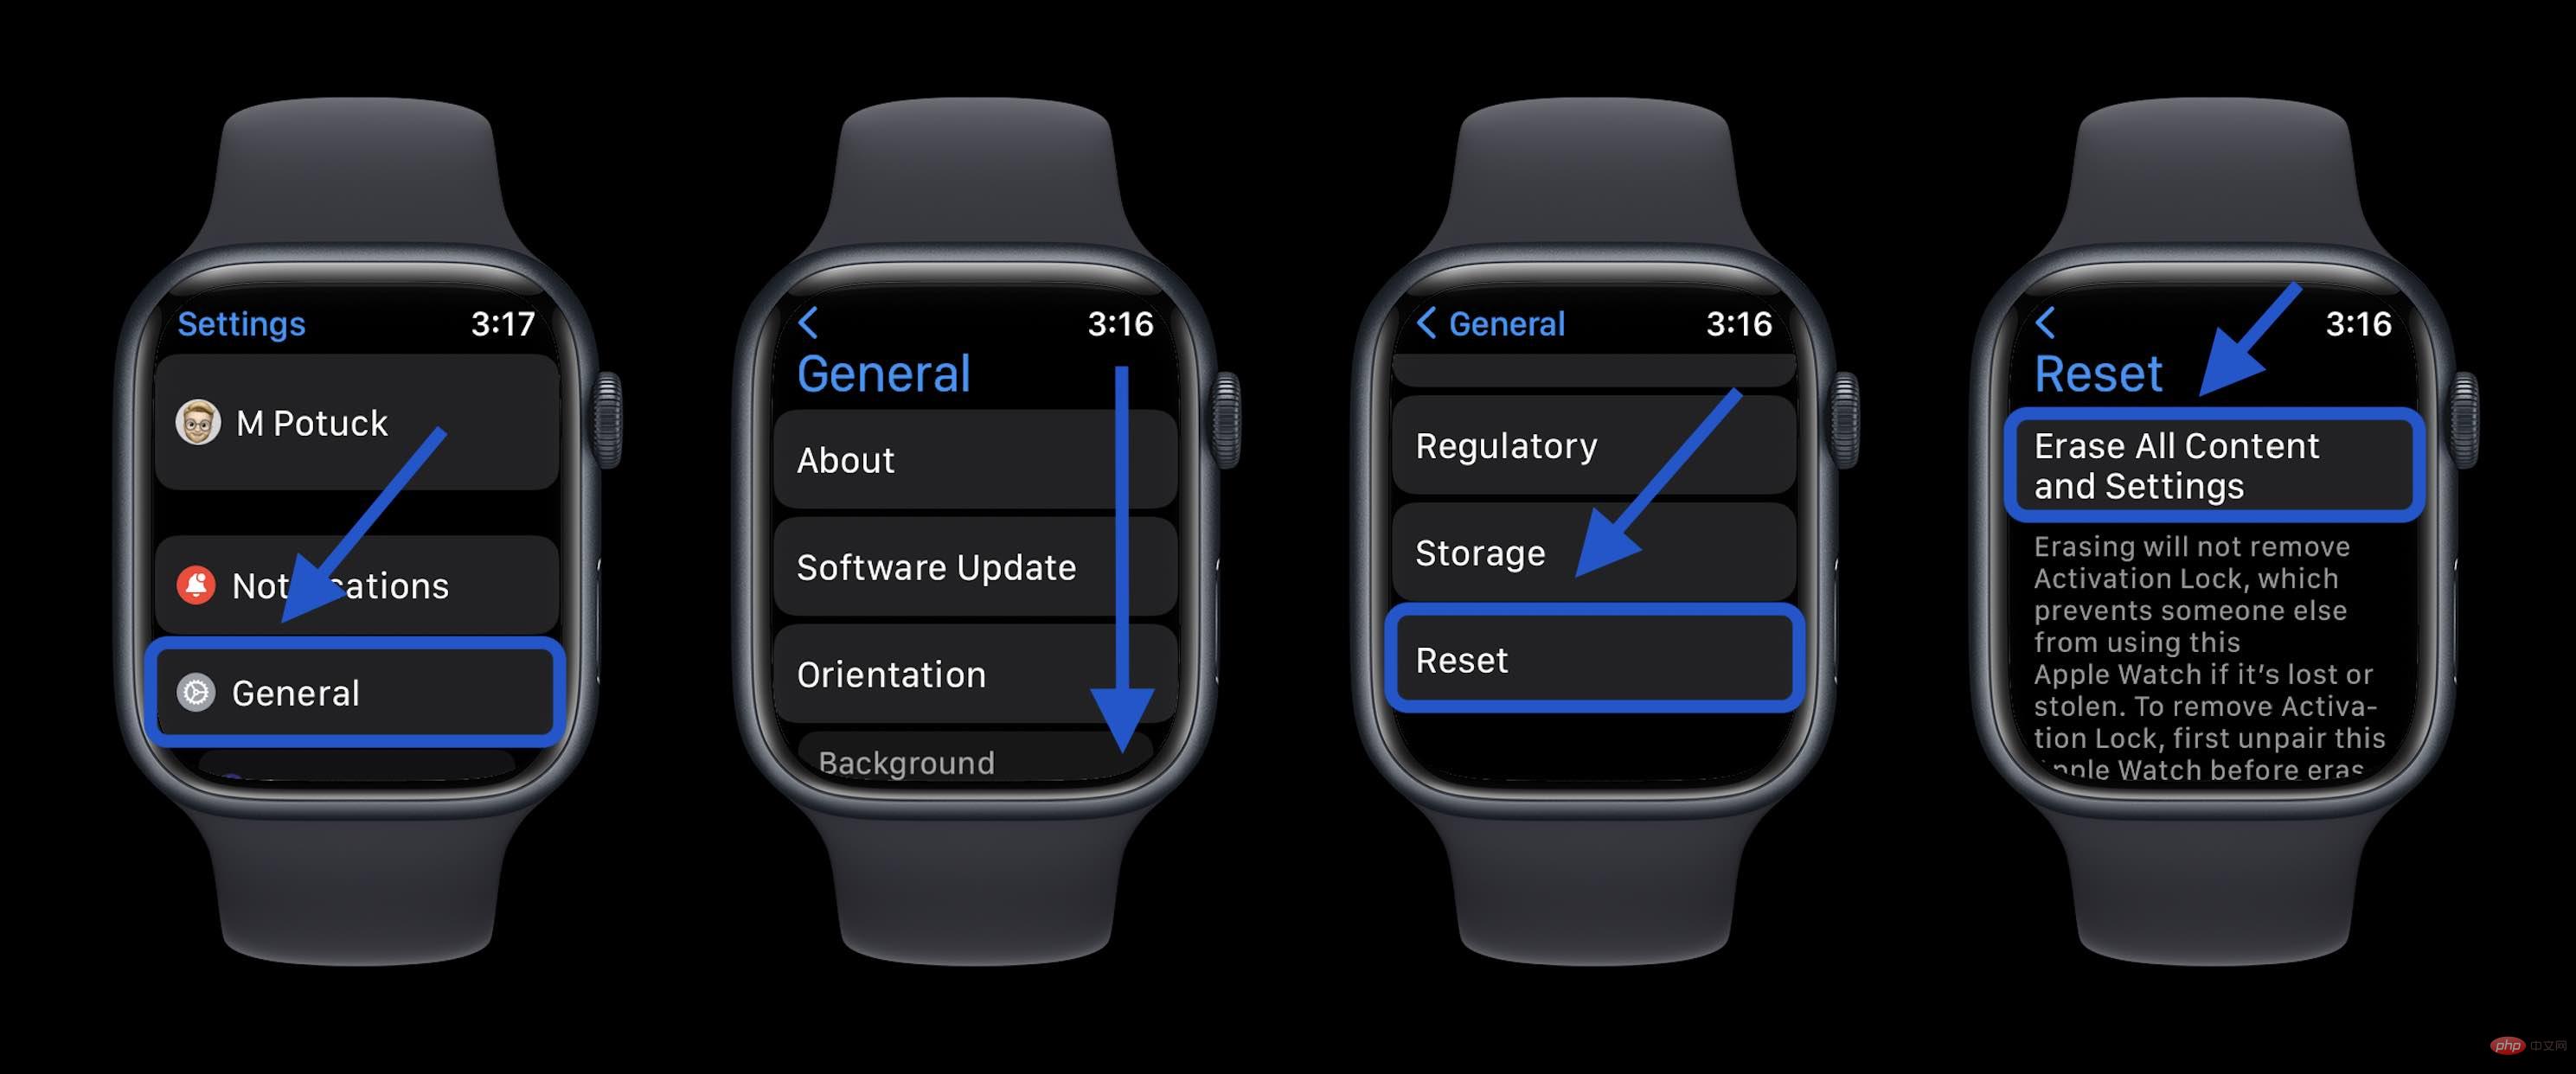 如何在有或没有 iPhone 的情况下将 Apple Watch 恢复出厂设置